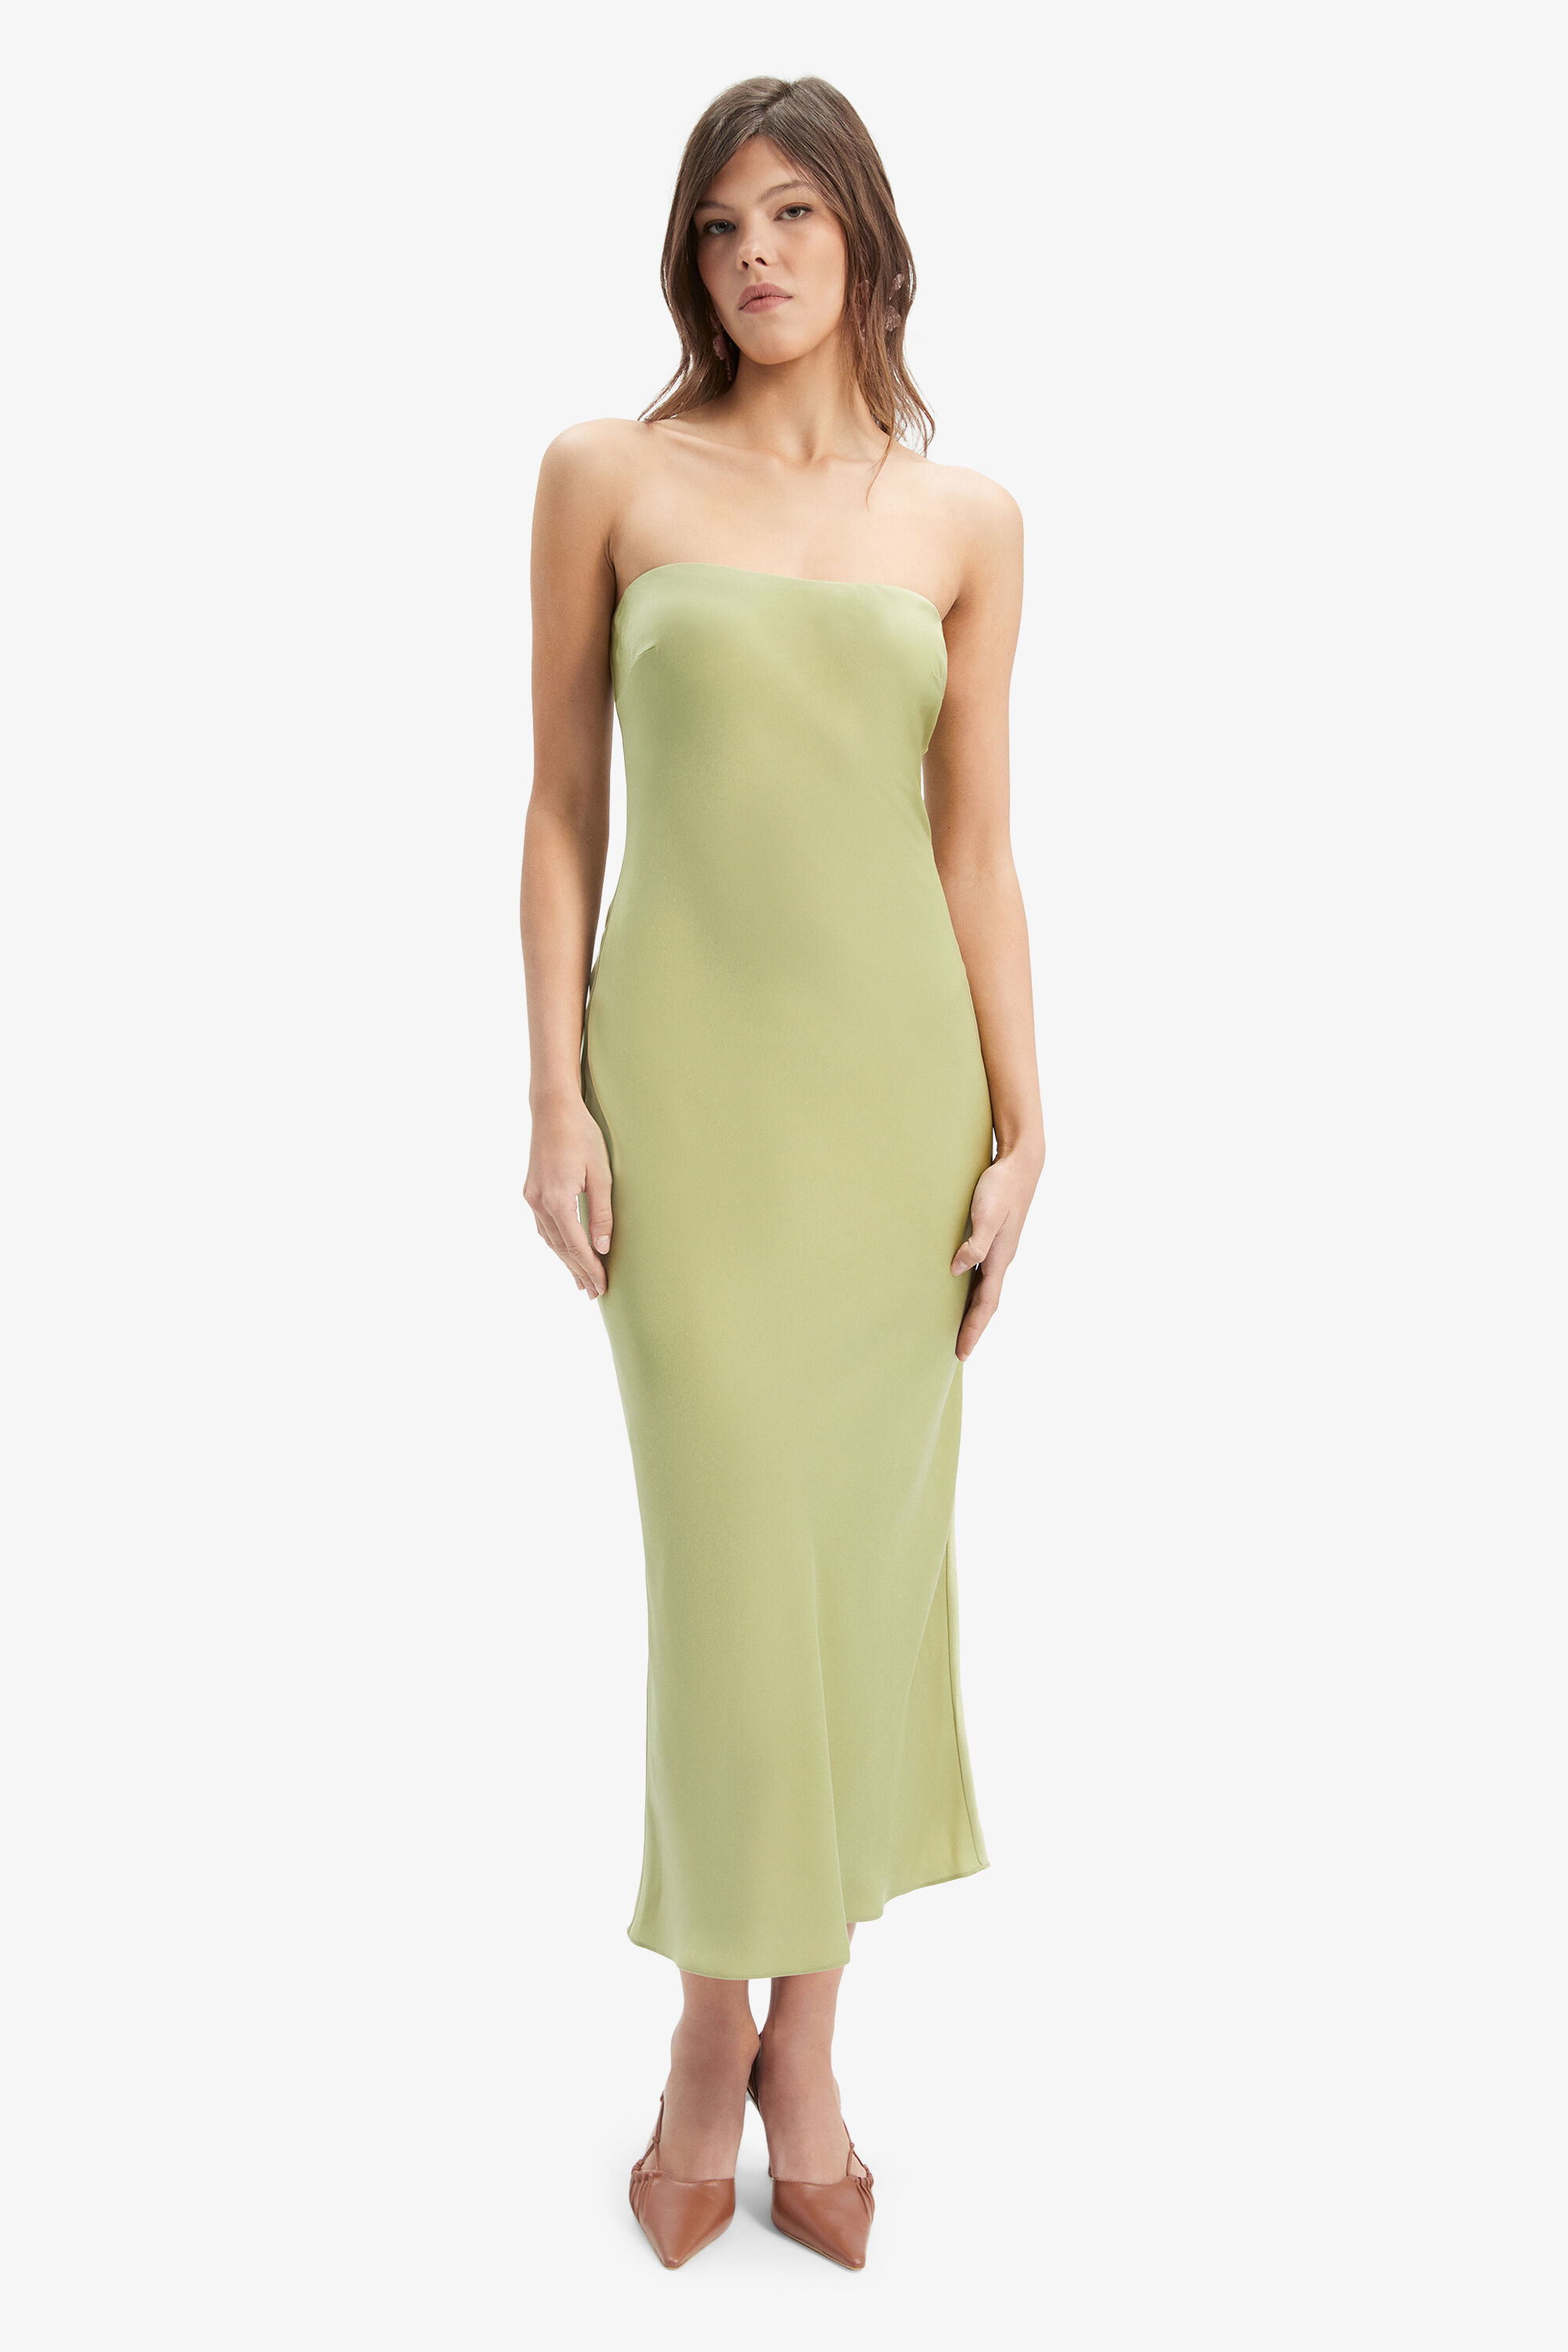 Casette Strapless Slip Dress In Applegreen